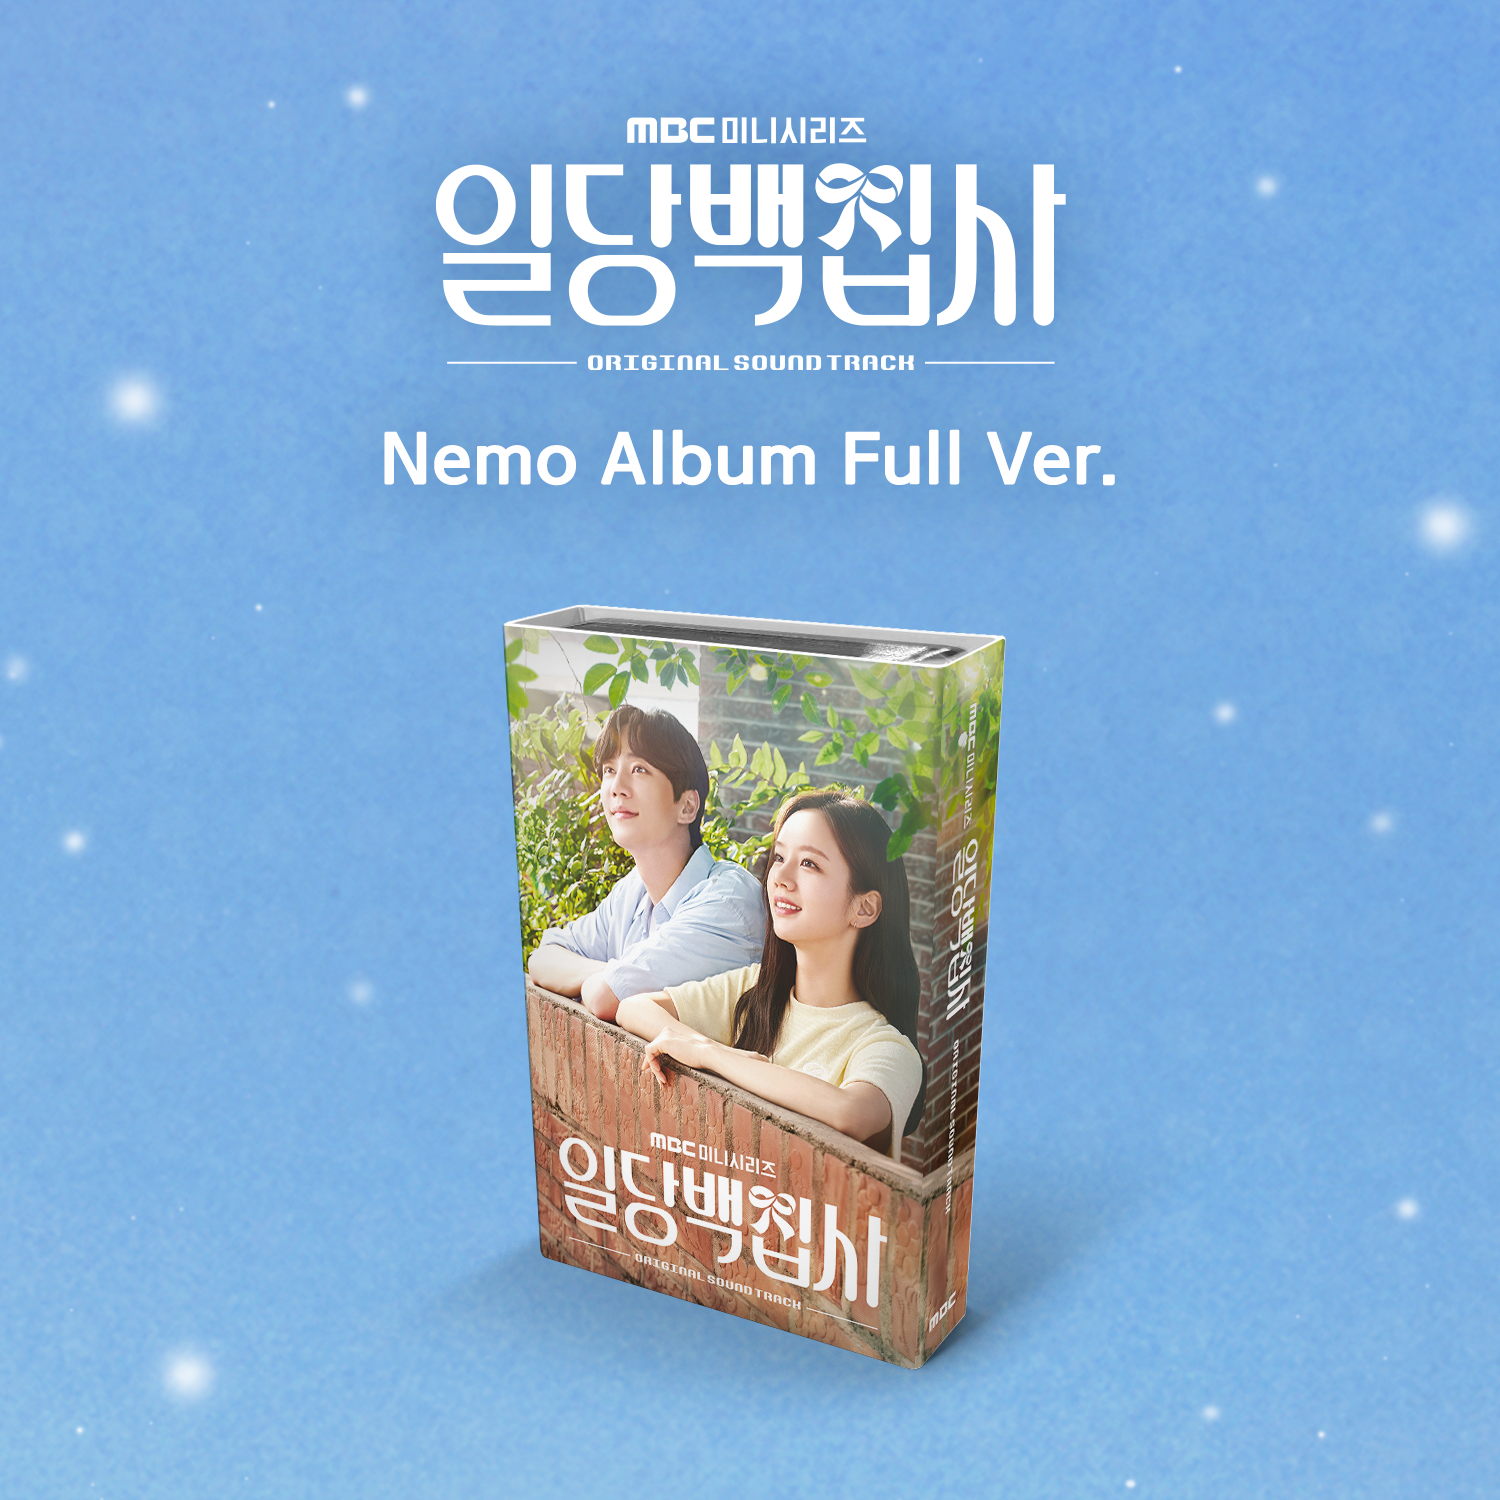 [全款] May I Help You? O.S.T 专辑 - MBC 电视剧 (Nemo Album Full Ver.) _indie散粉团